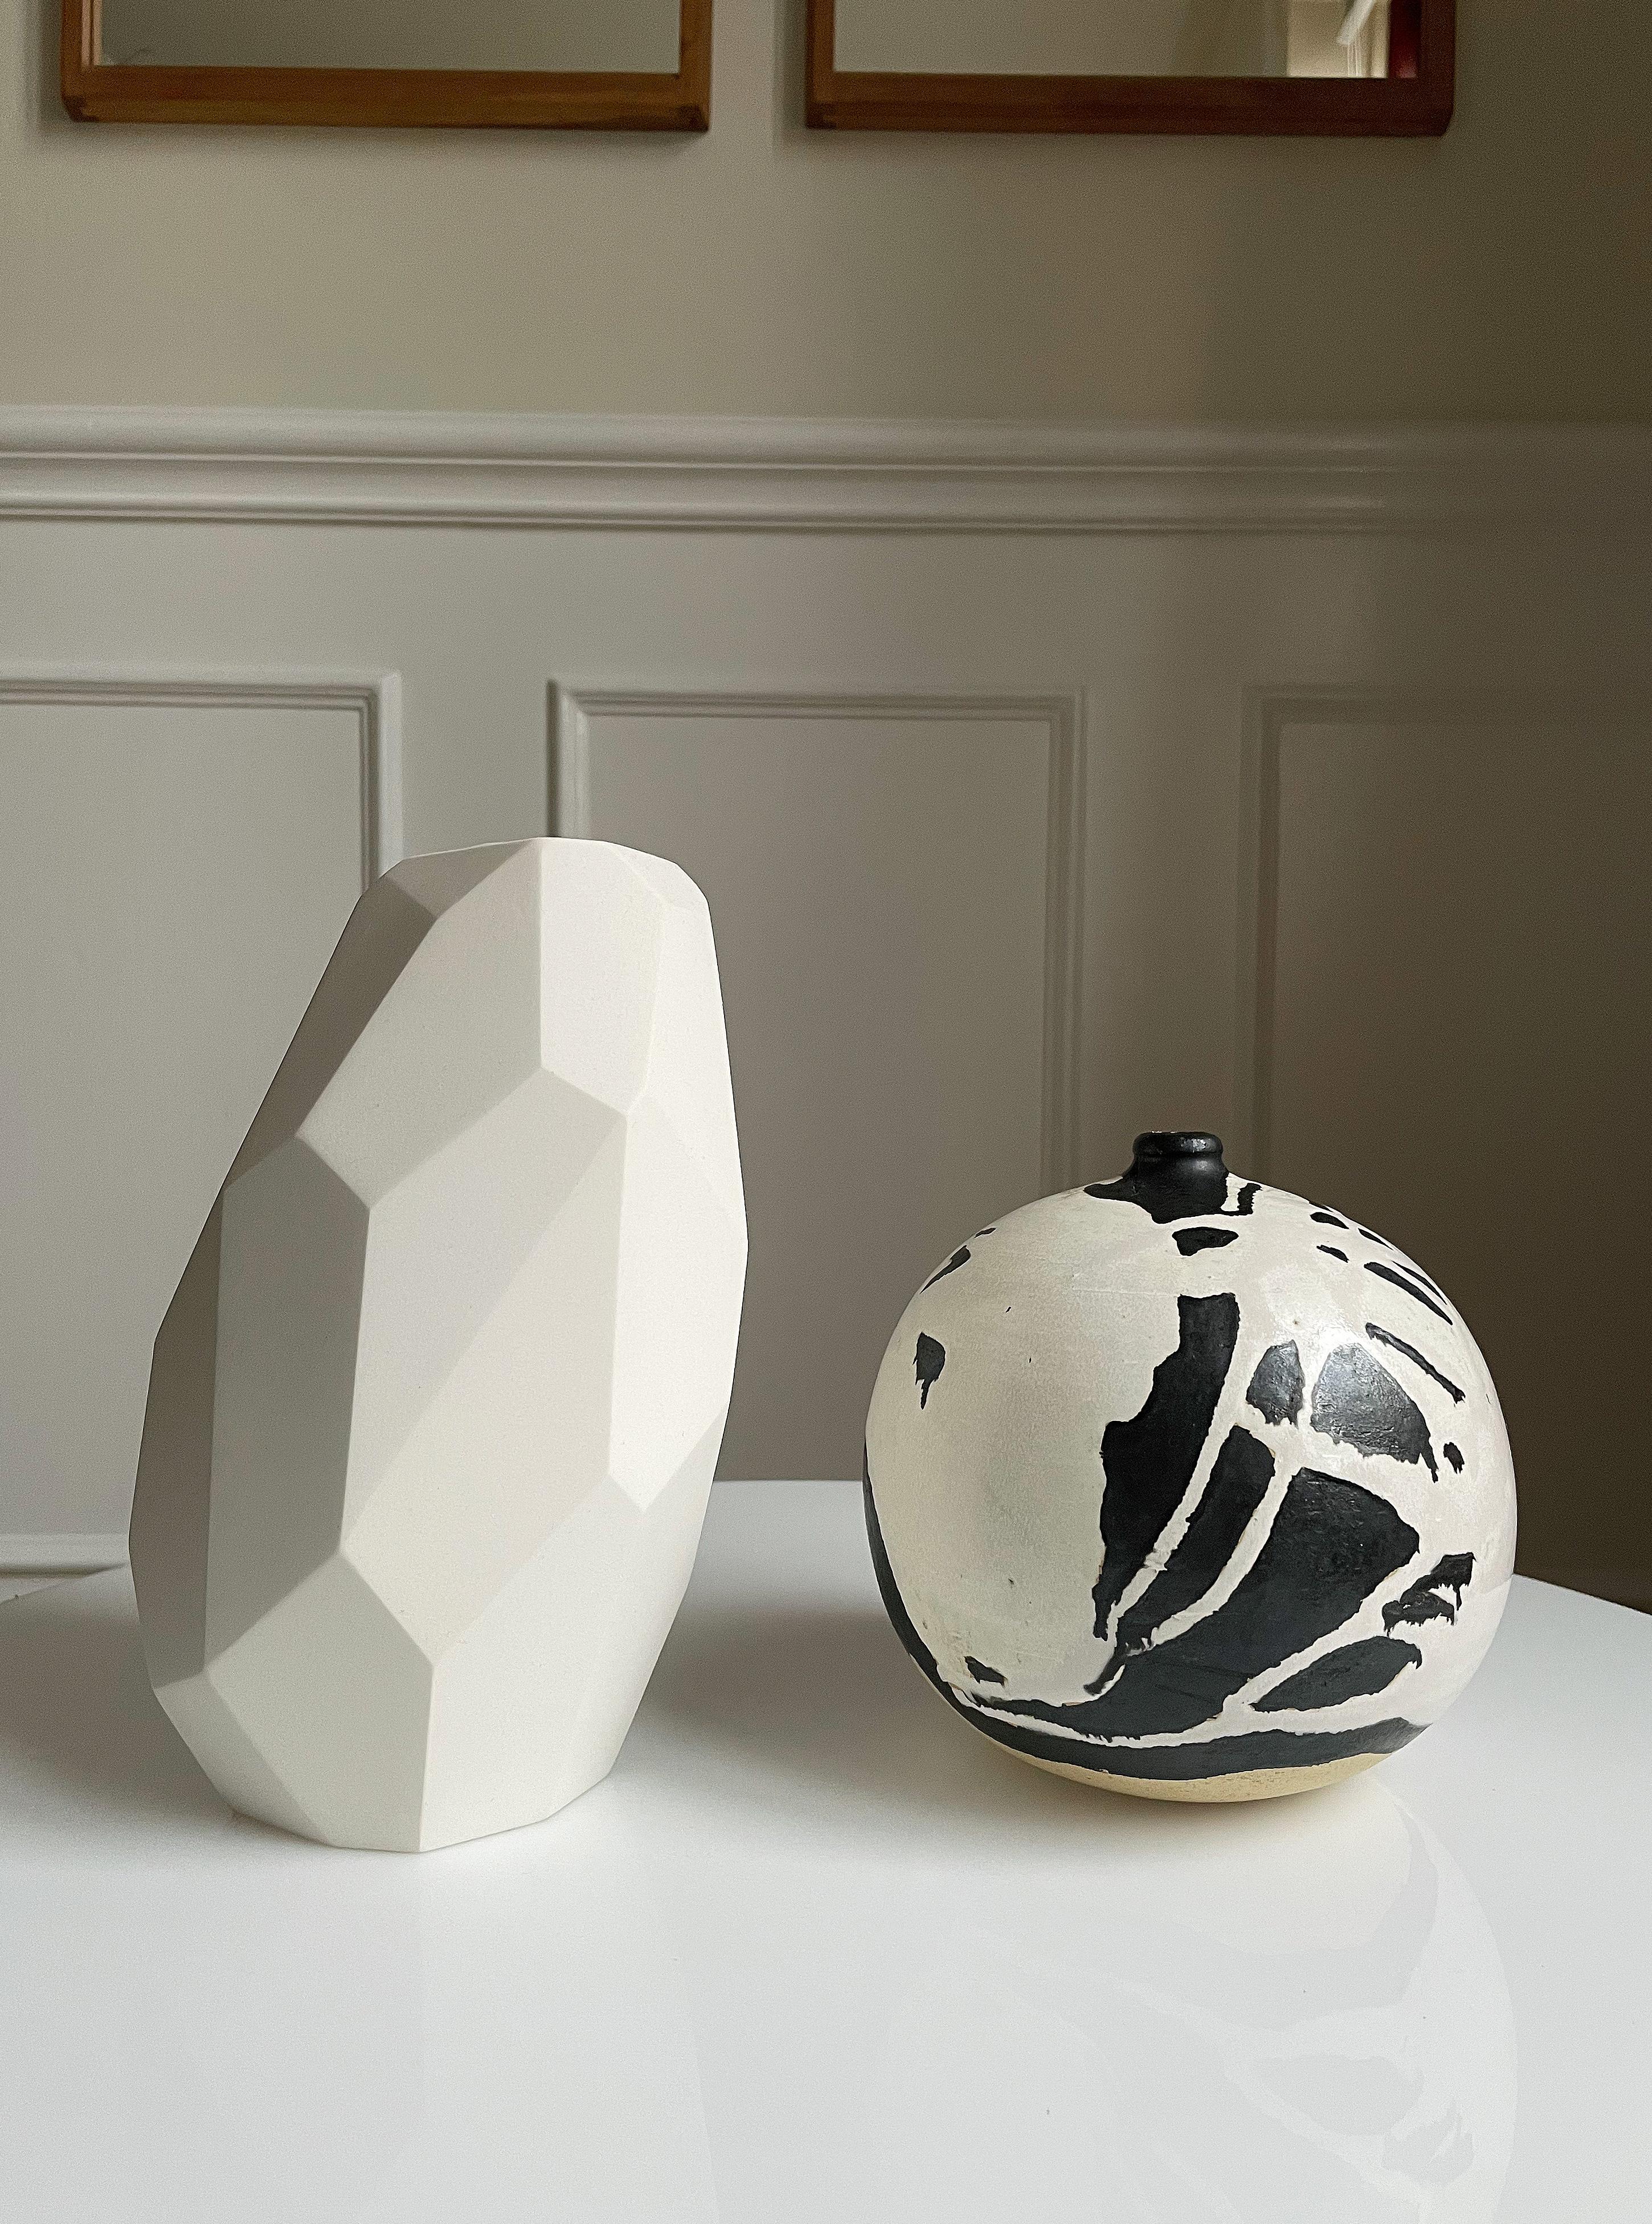 Vase sculptural contemporain en céramique blanche, en édition limitée, réalisé par l'artiste céramiste danoise Anne Jørgensen pour AJ Ceramics. Le design incliné sculptural se compose de multiples angles aigus et de surfaces de tailles différentes